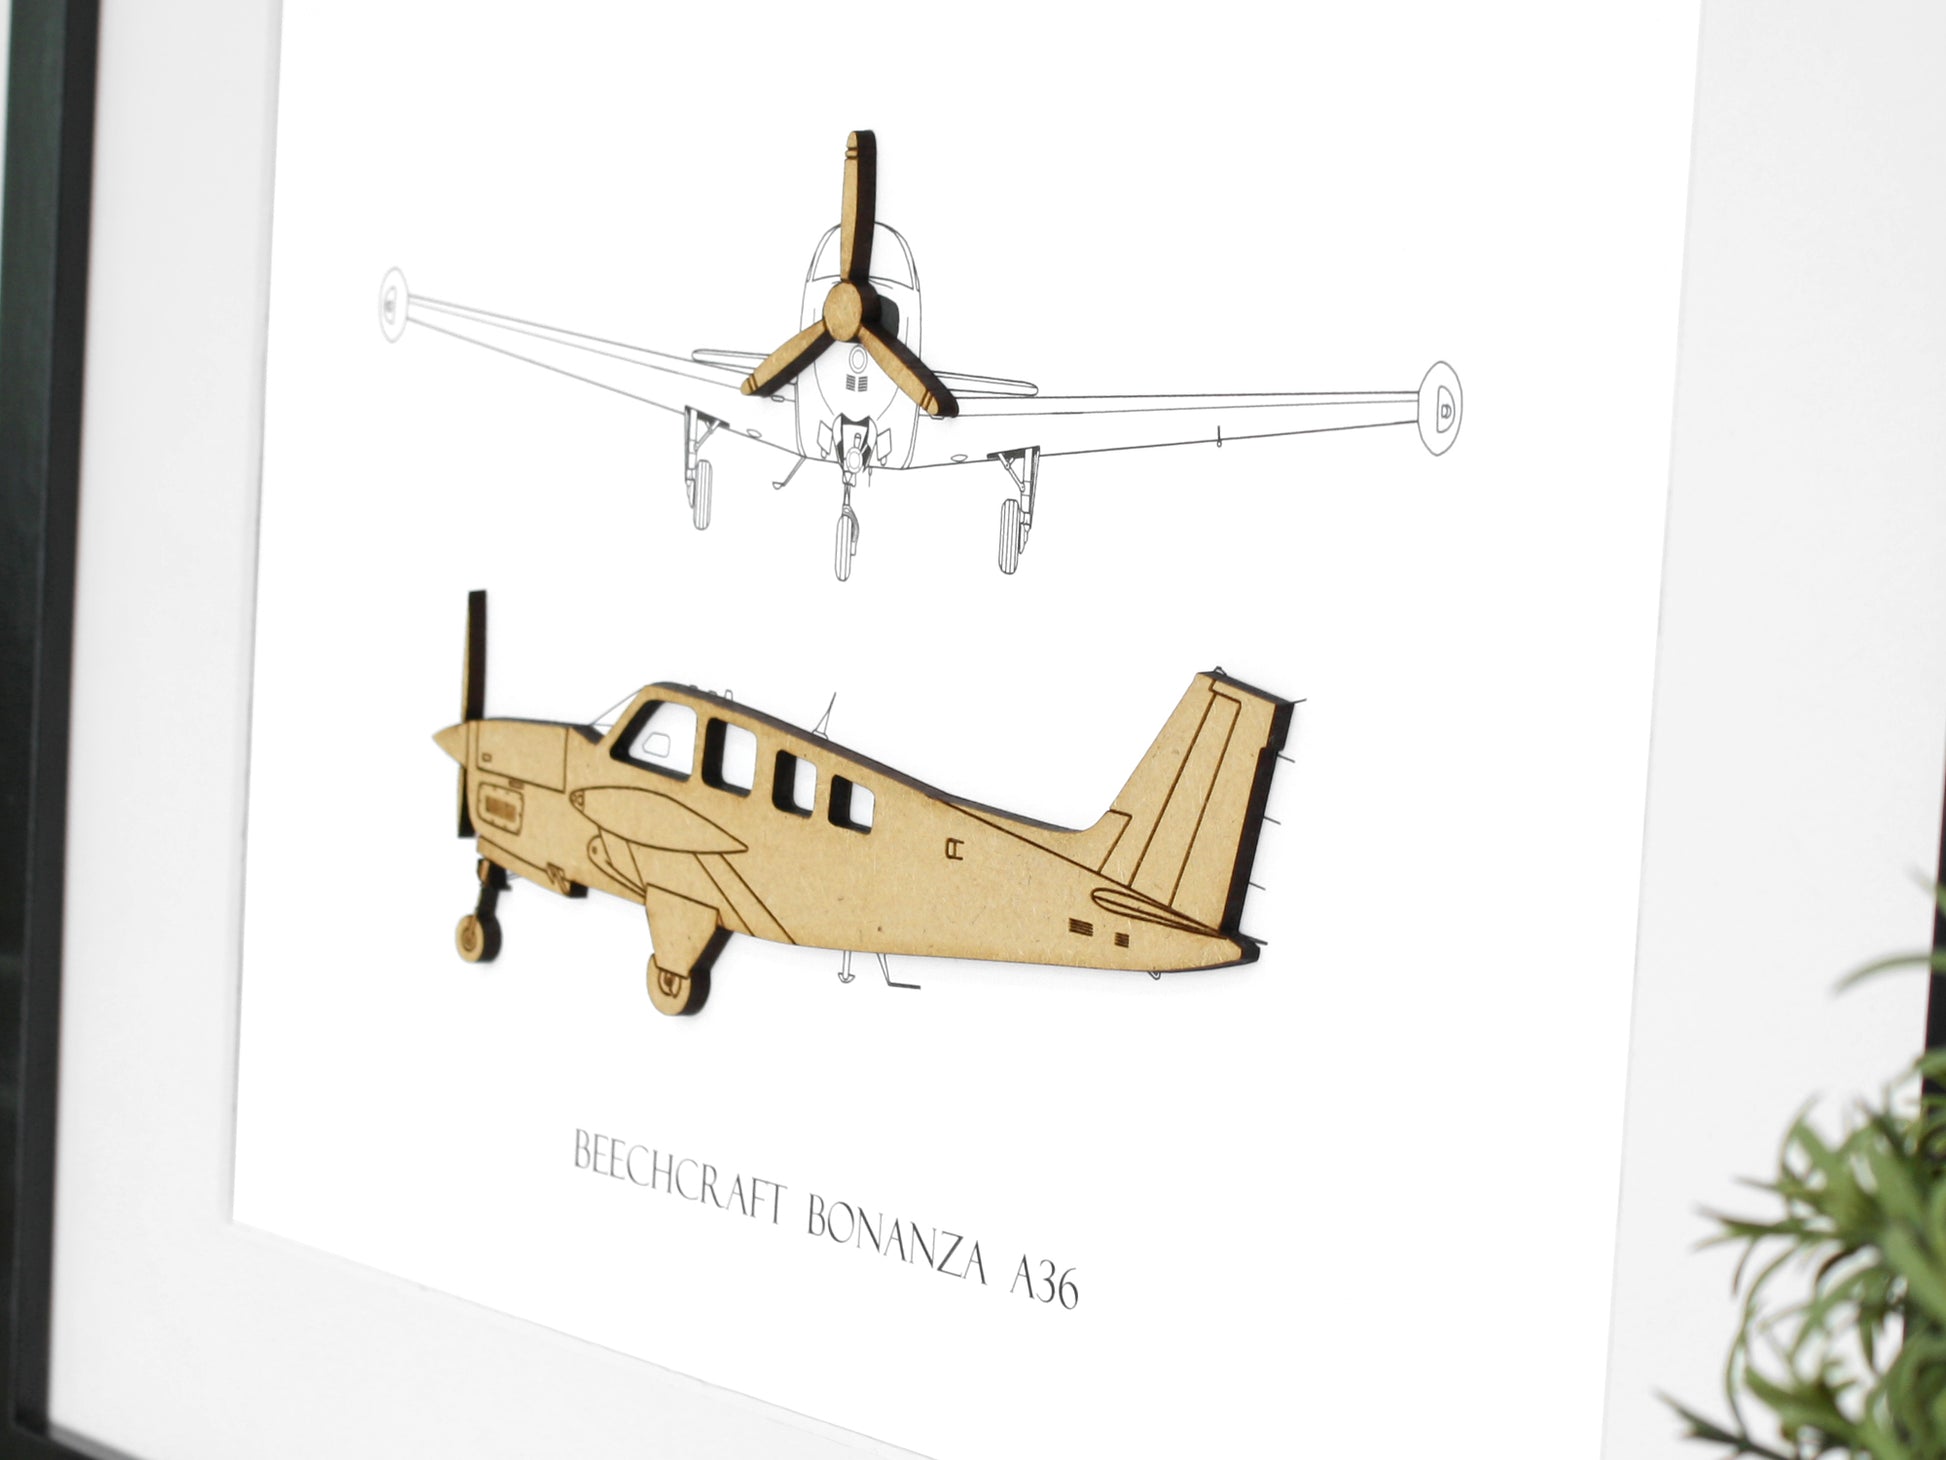 Beechcraft Bonanza A36 blueprint art